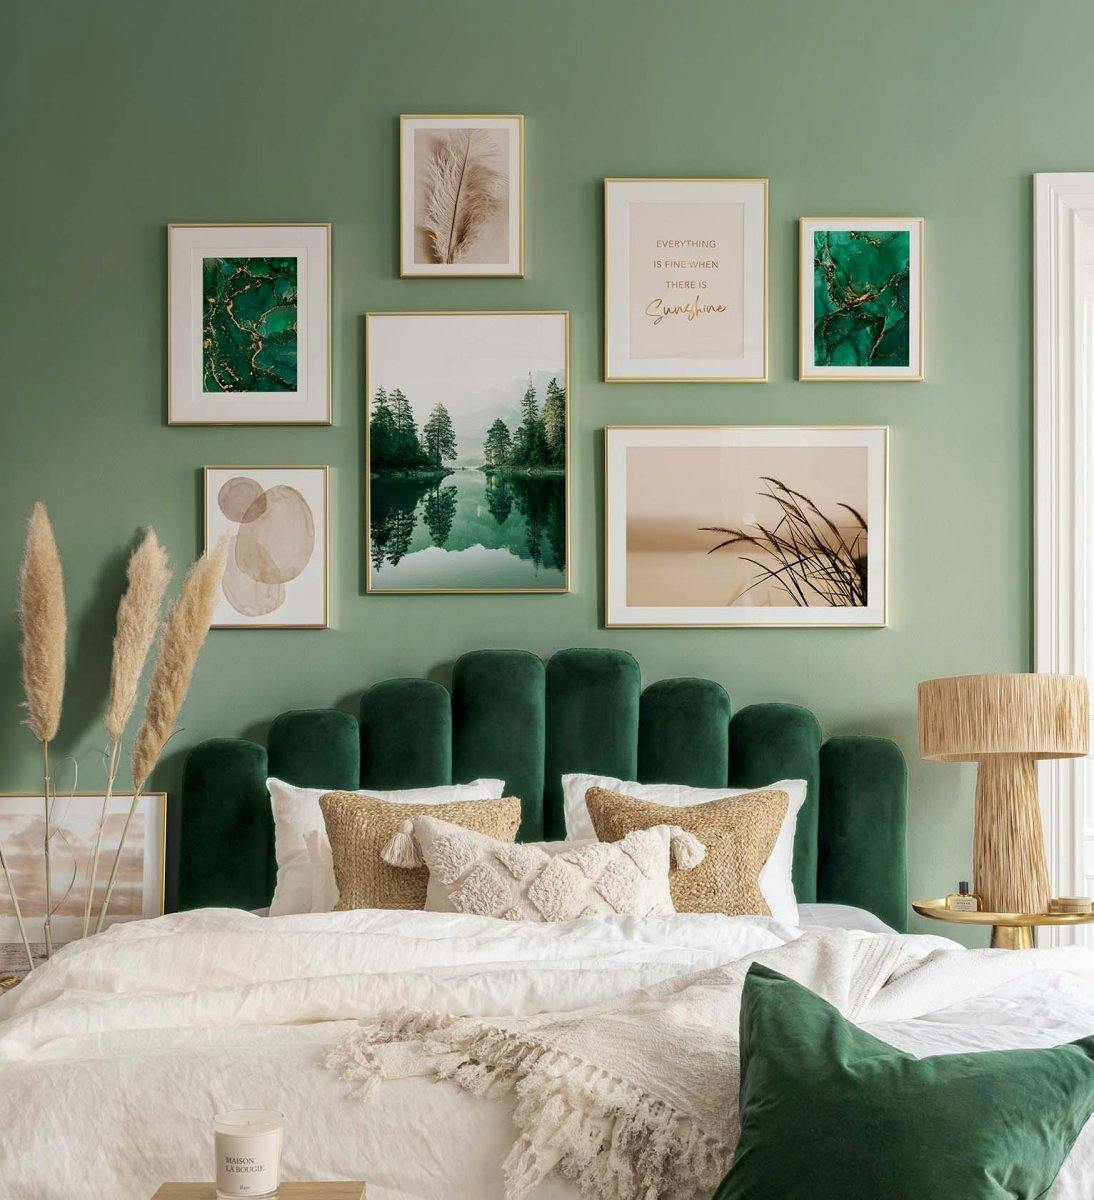 جدار معرض مع مطبوعات طبيعية باللونين الأخضر والبيج مع إطارات ذهبية لغرفة النوم